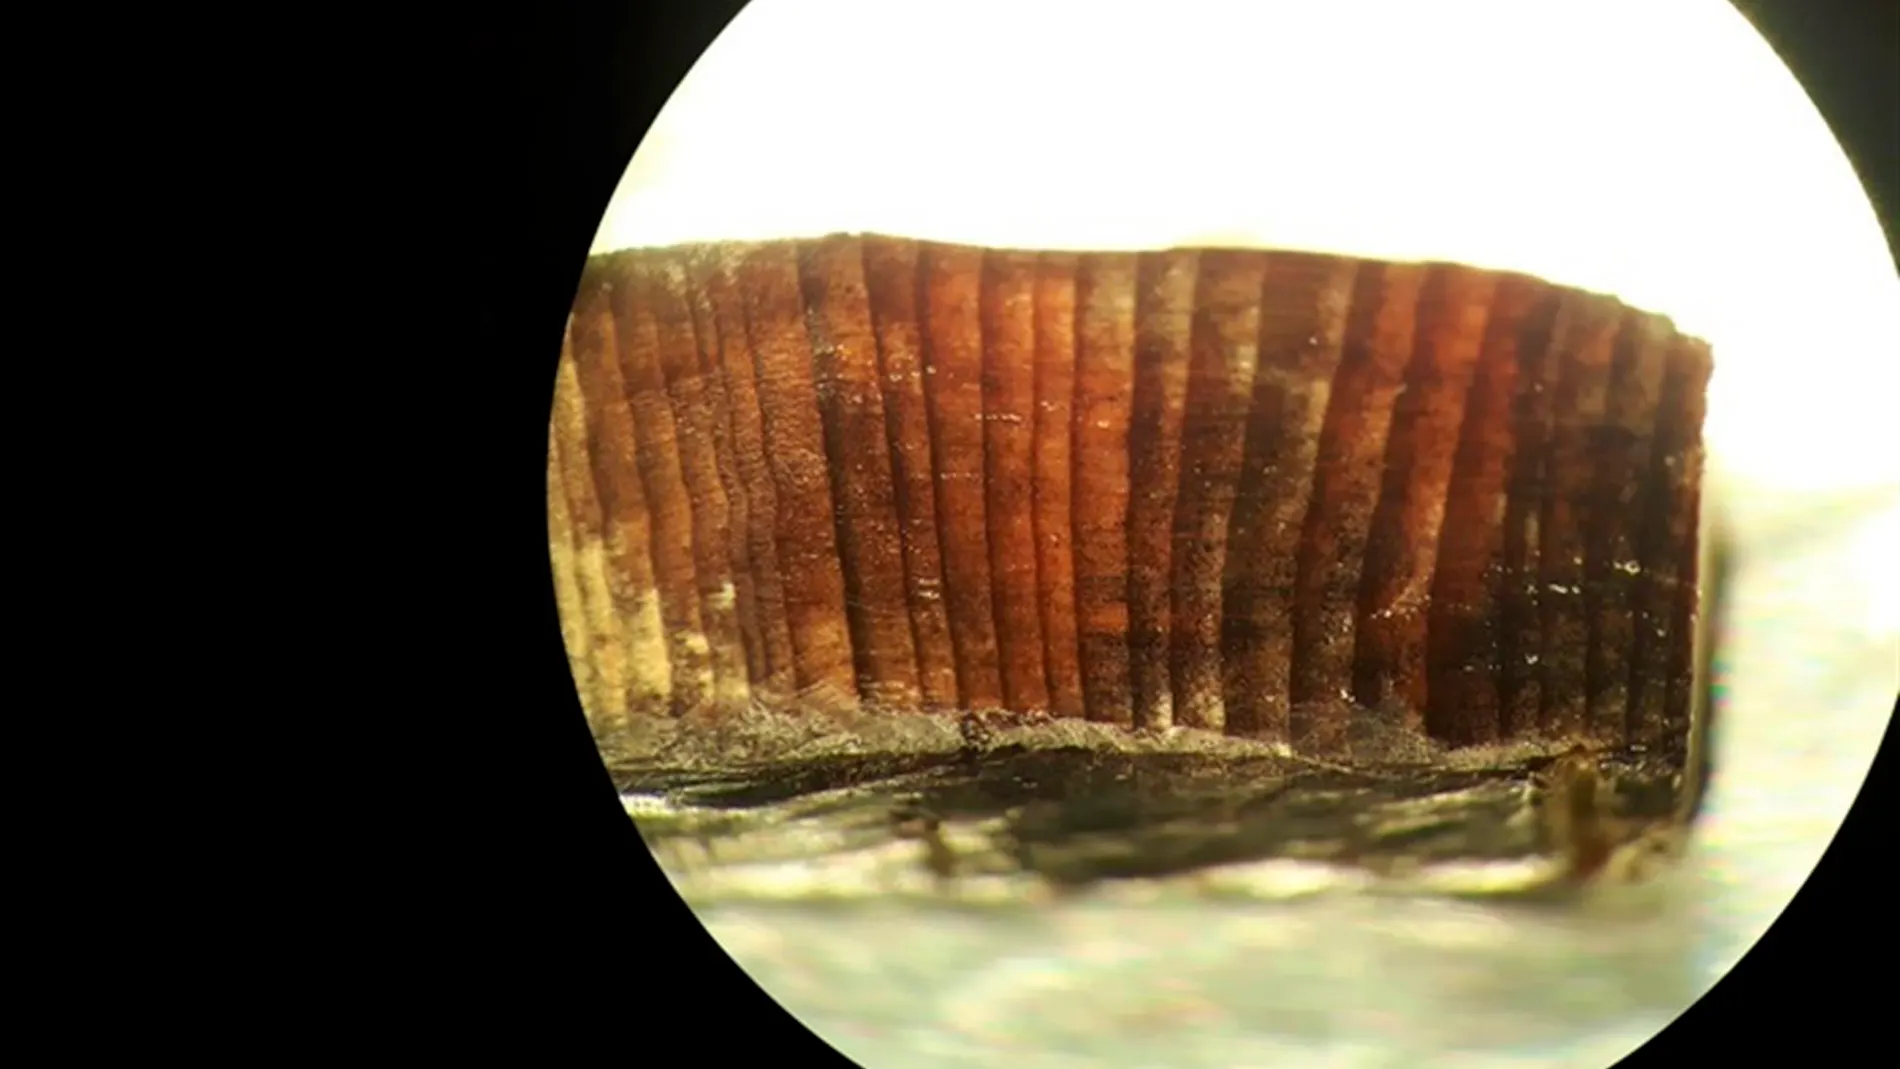 Imagen de microscopio de uno de los fragmentos de madera estudiados